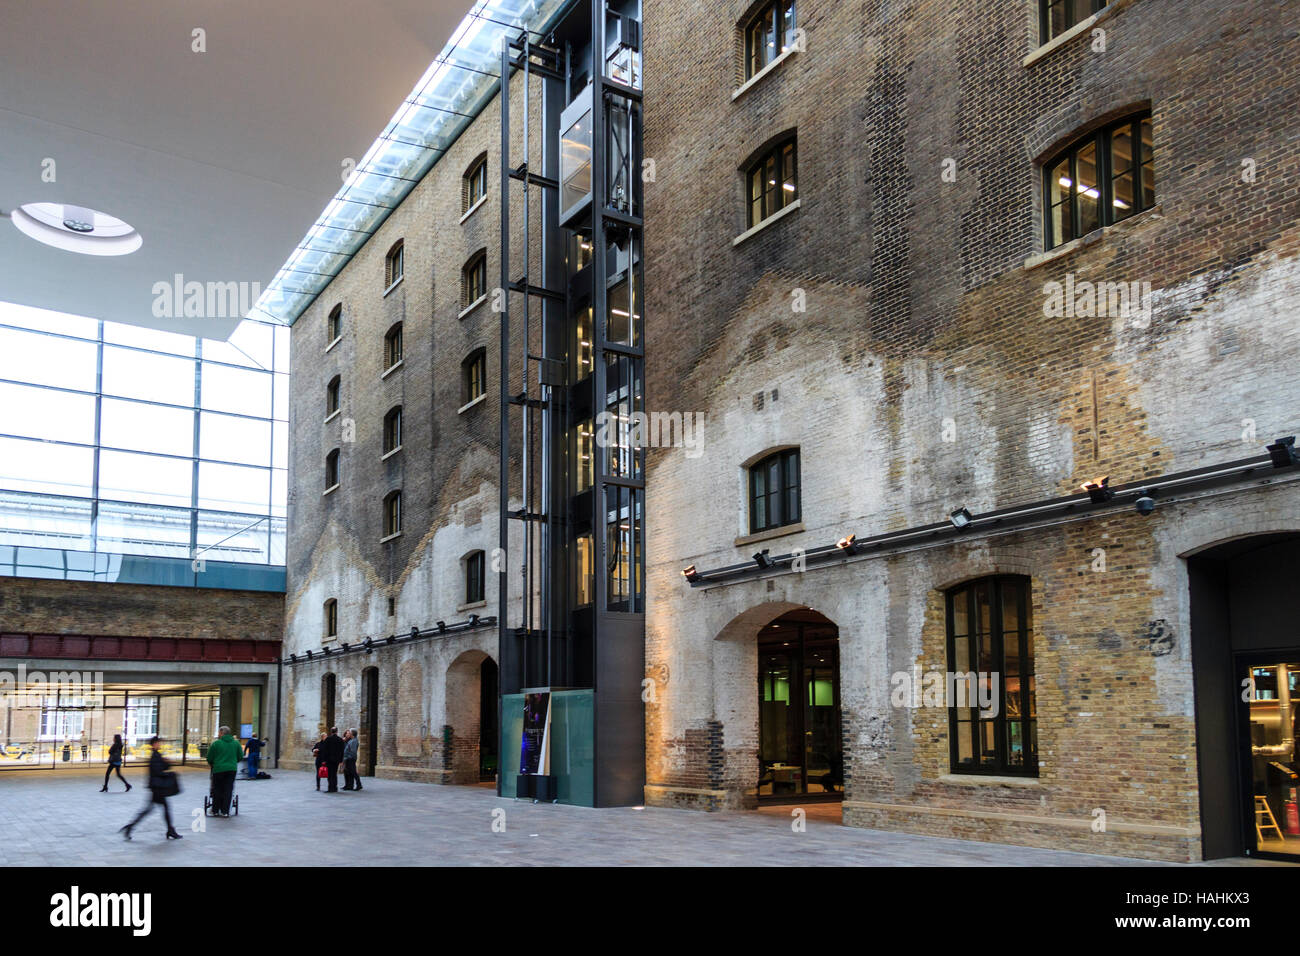 Converti les entrepôts, pour les arts de l'université maintenant, King's Cross, Londres, Royaume-Uni, 2012 Banque D'Images